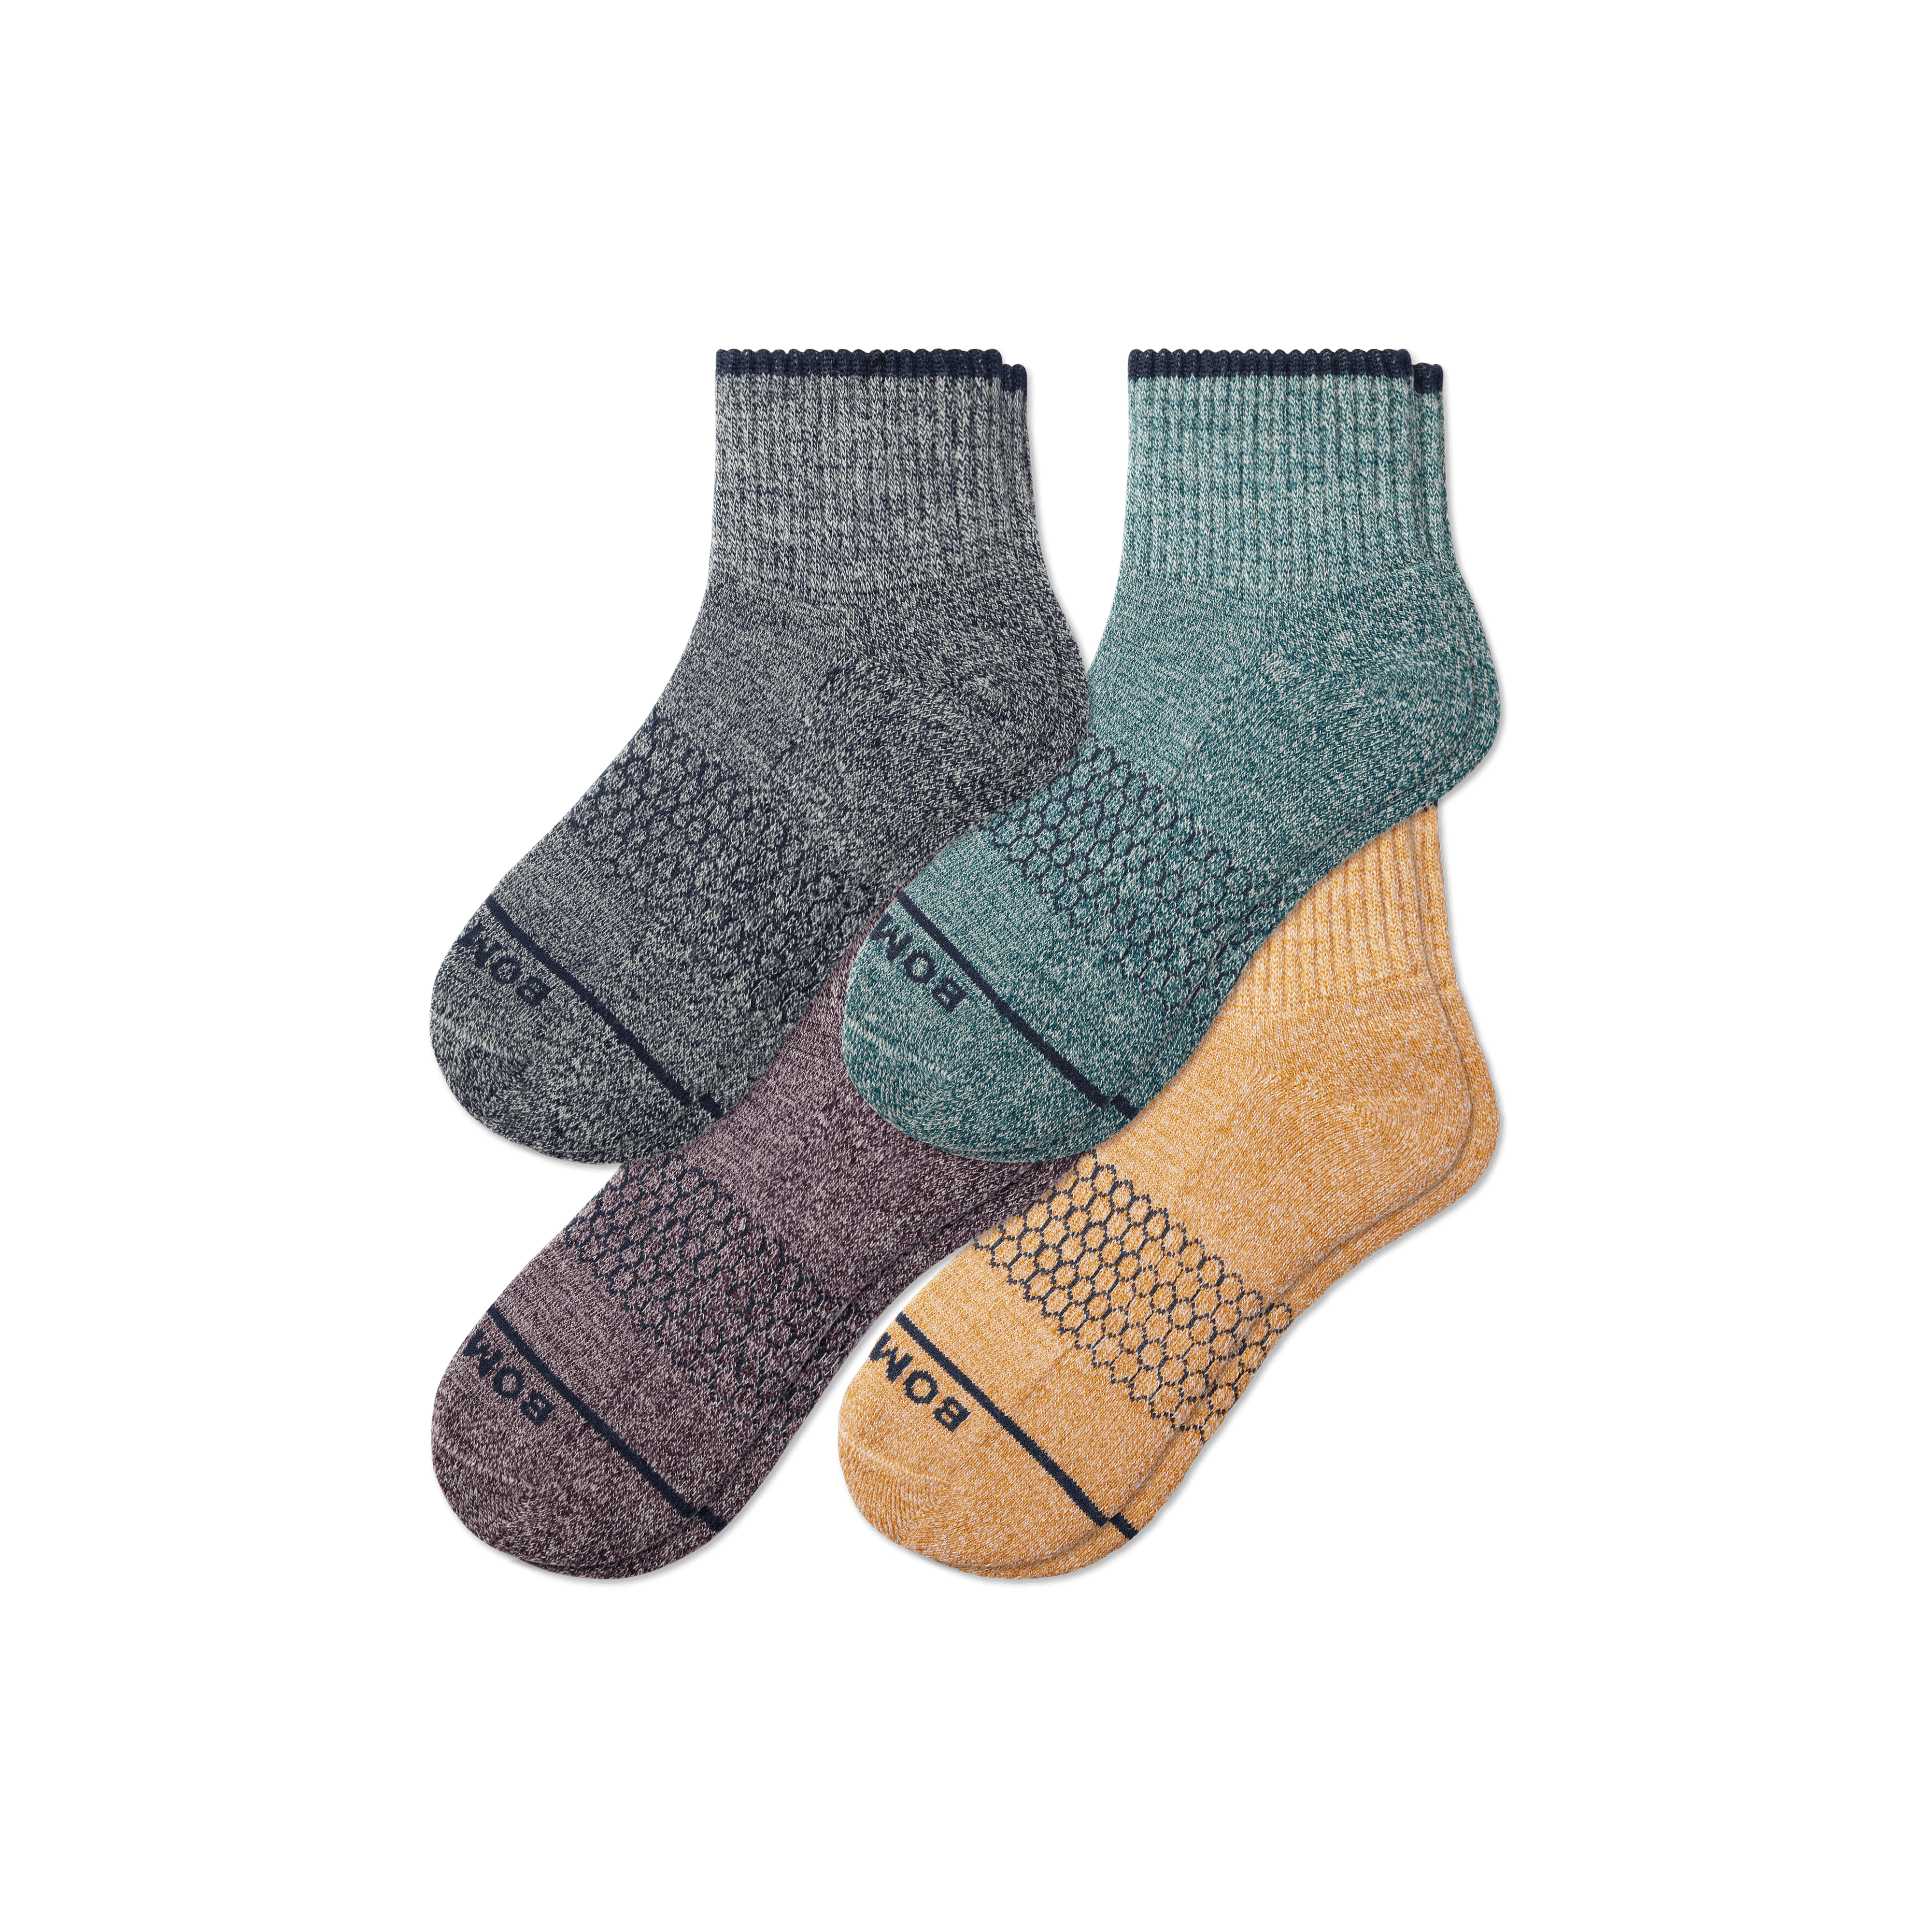 Bombas Merino Wool Blend Quarter Sock 4-pack In Butterscotch Plum Mix